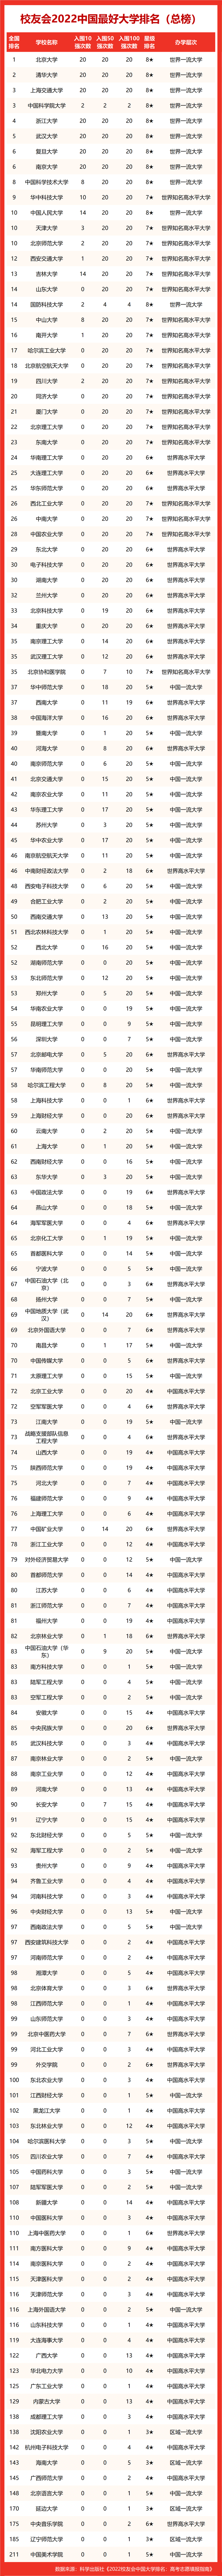 2022年中国各区最好大学排名，西交大武大吉大川大雄居第一